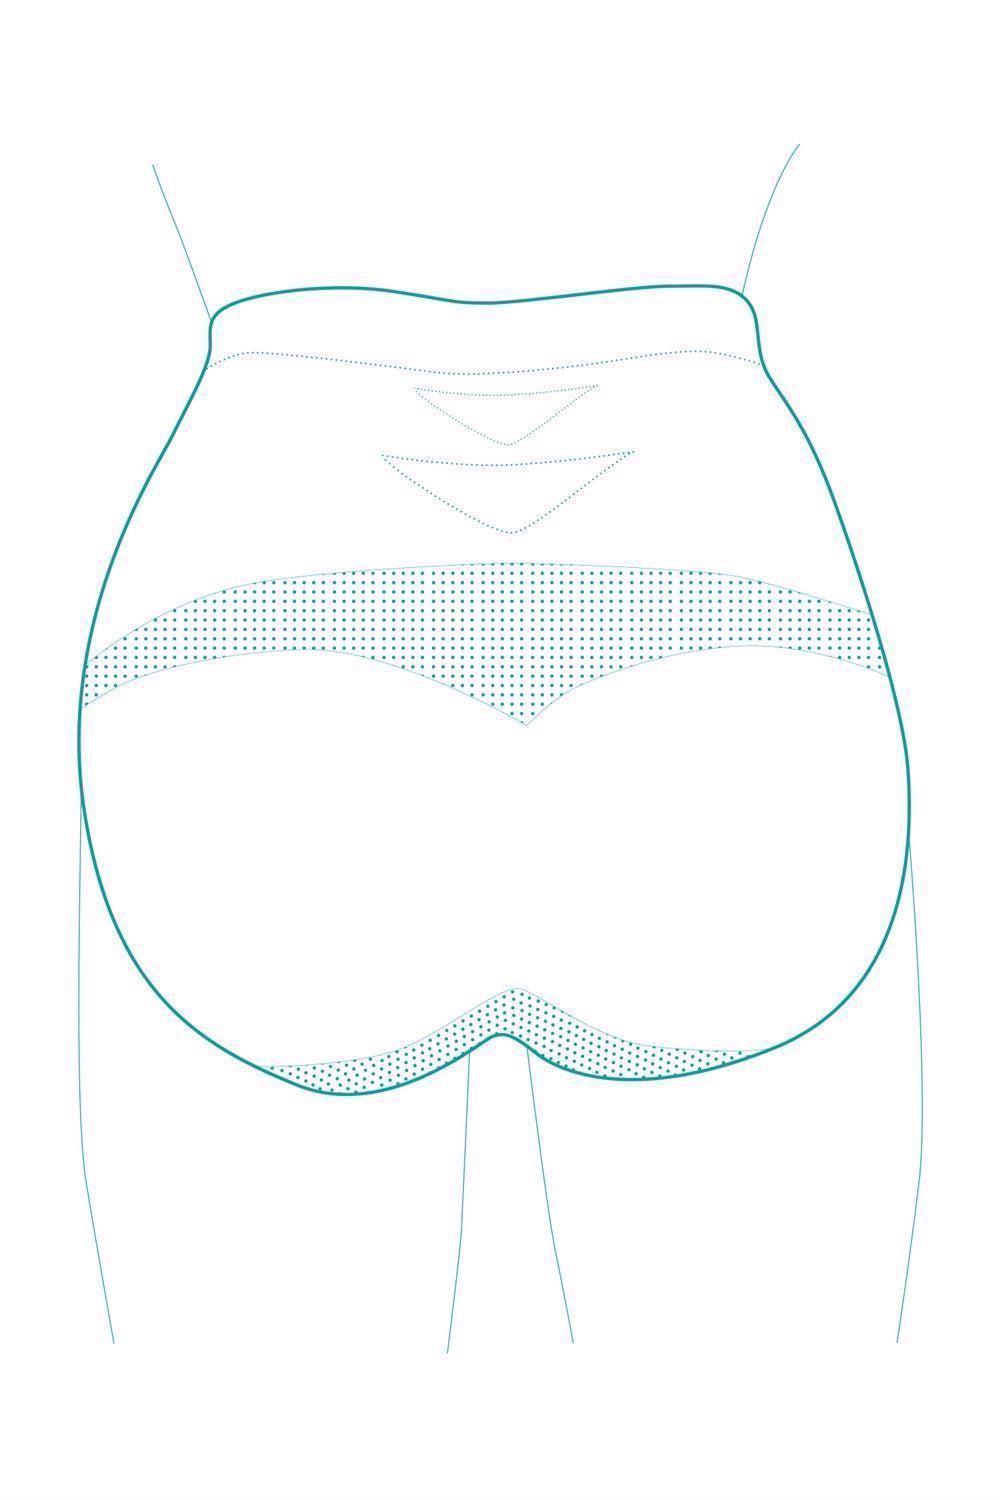 Milker Graviditets-trusser i Bambus - Bianca - Nude - Graviditetstøj - MamaMilla